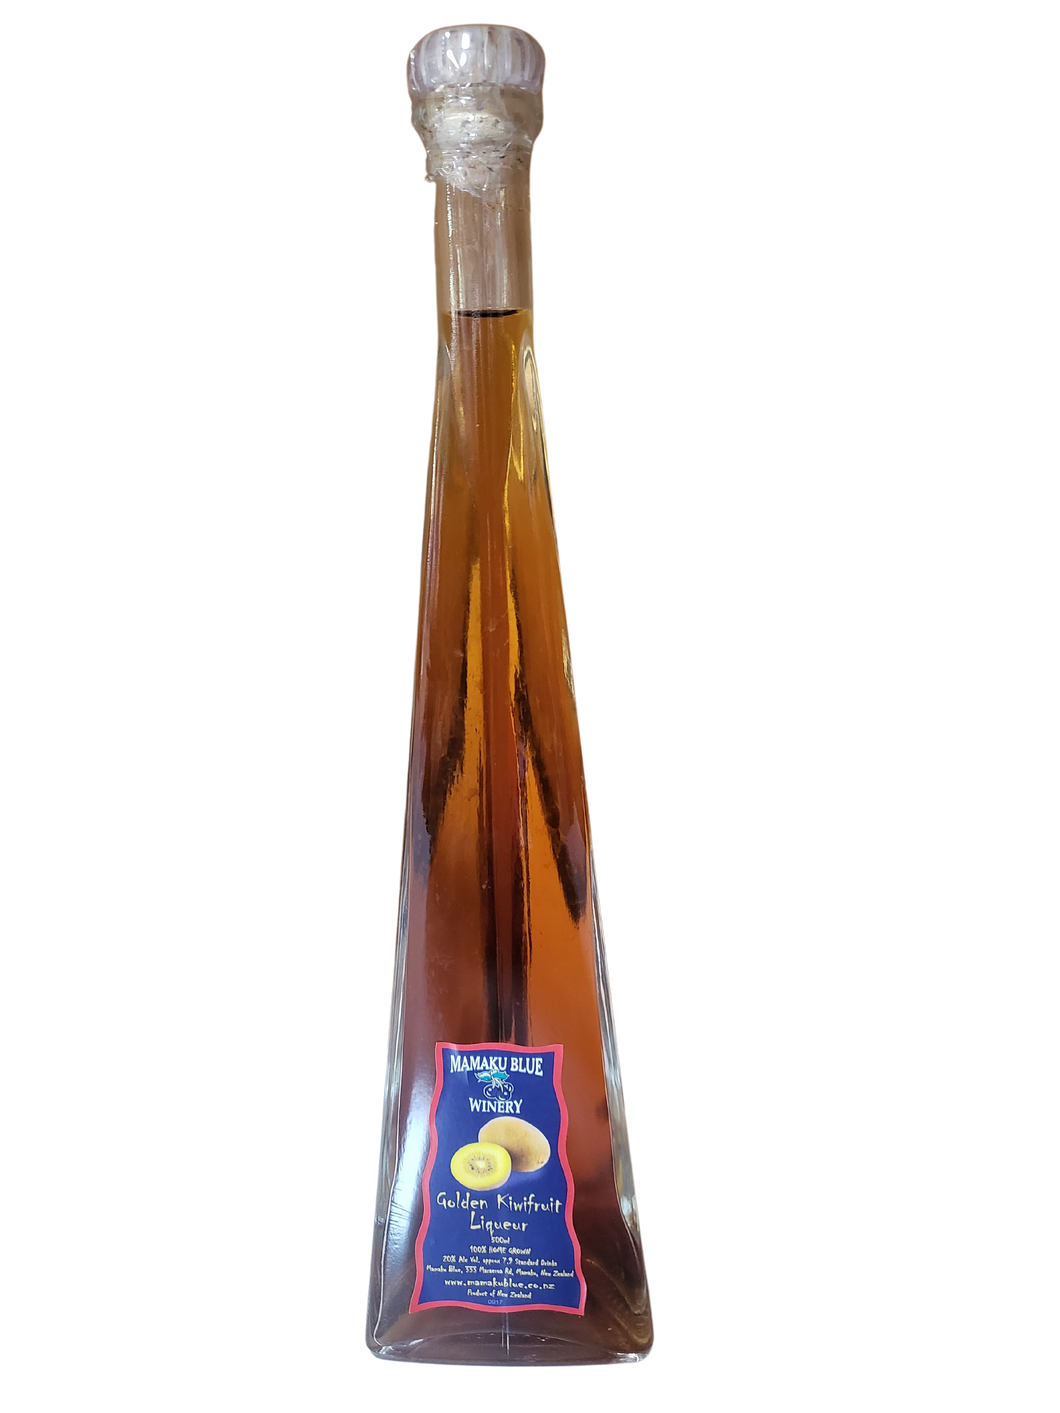 Golden Kiwifruit Liqueur